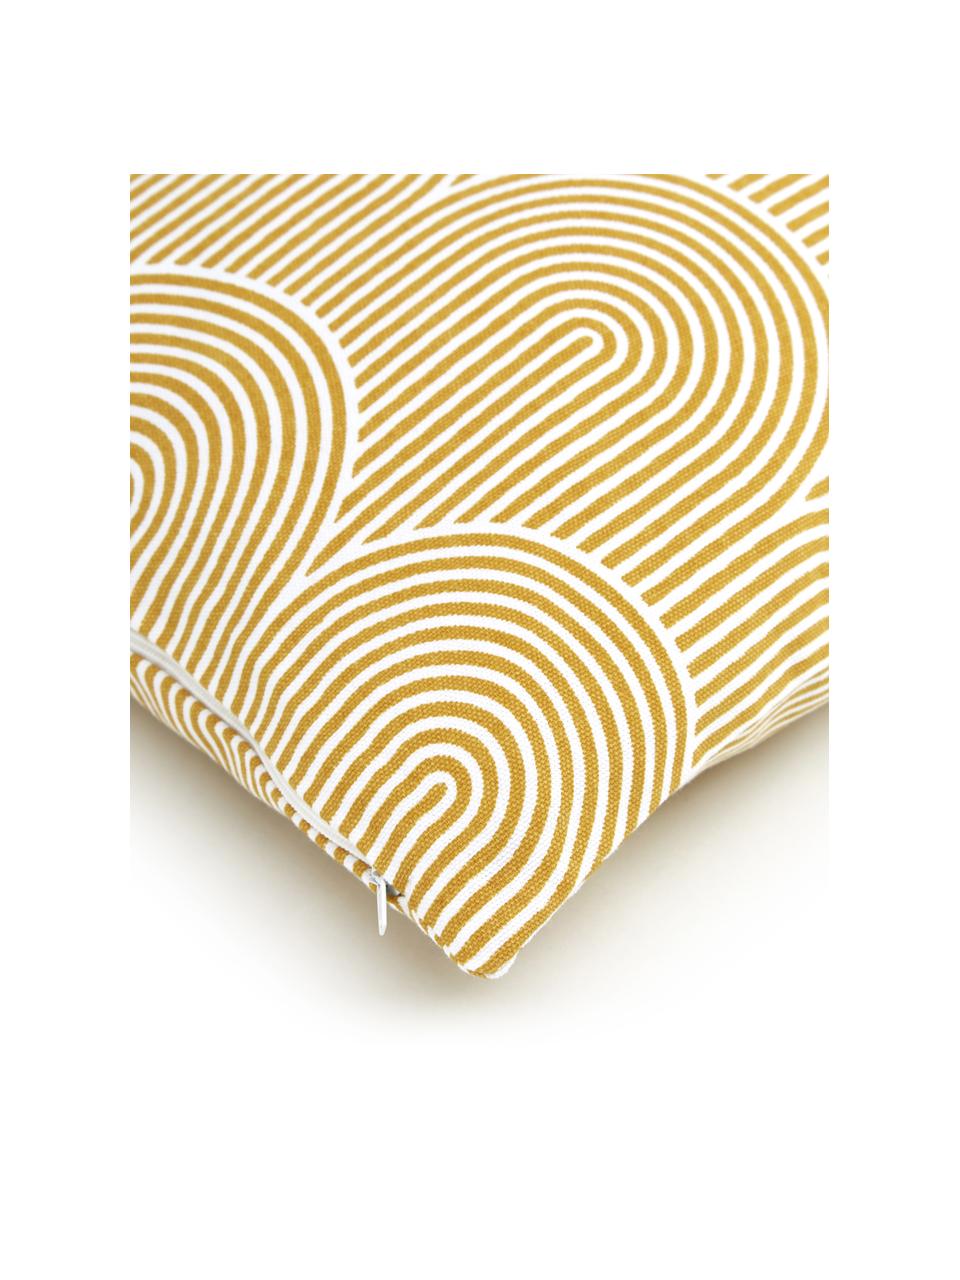 Housse de coussin 45x45 en coton jaune/blanc Arc, 100 % coton, Jaune, larg. 45 x long. 45 cm